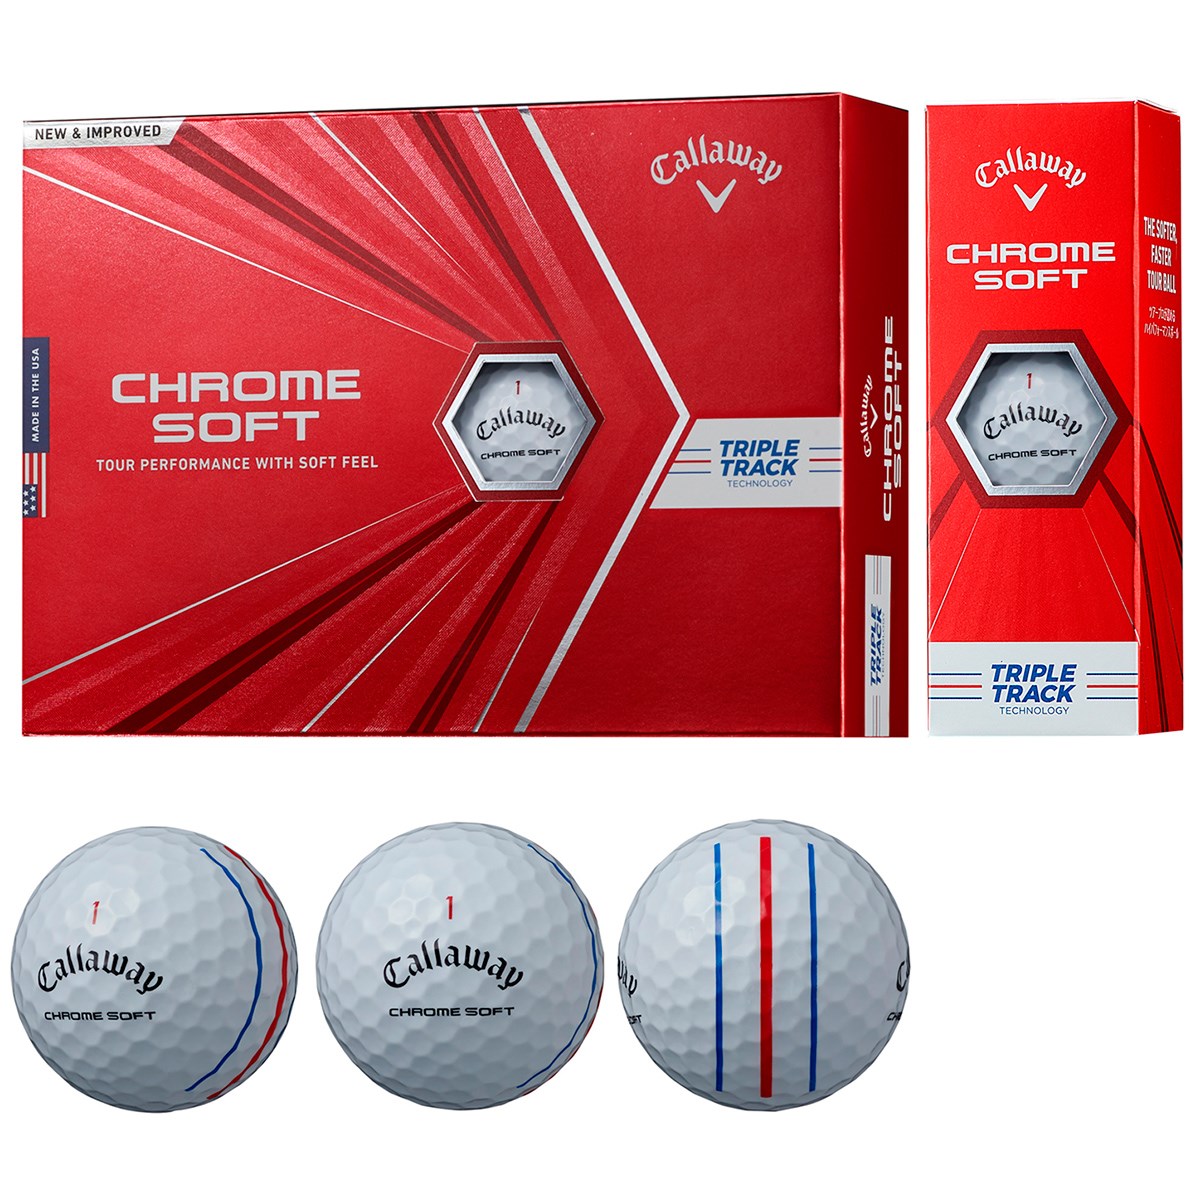 Dショッピング キャロウェイゴルフ Chrom Soft Chrome Soft ボール 1ダース 12個入り ホワイト トリプルトラック カテゴリ ゴルフボールの販売できる商品 Gdoゴルフショップ ドコモの通販サイト